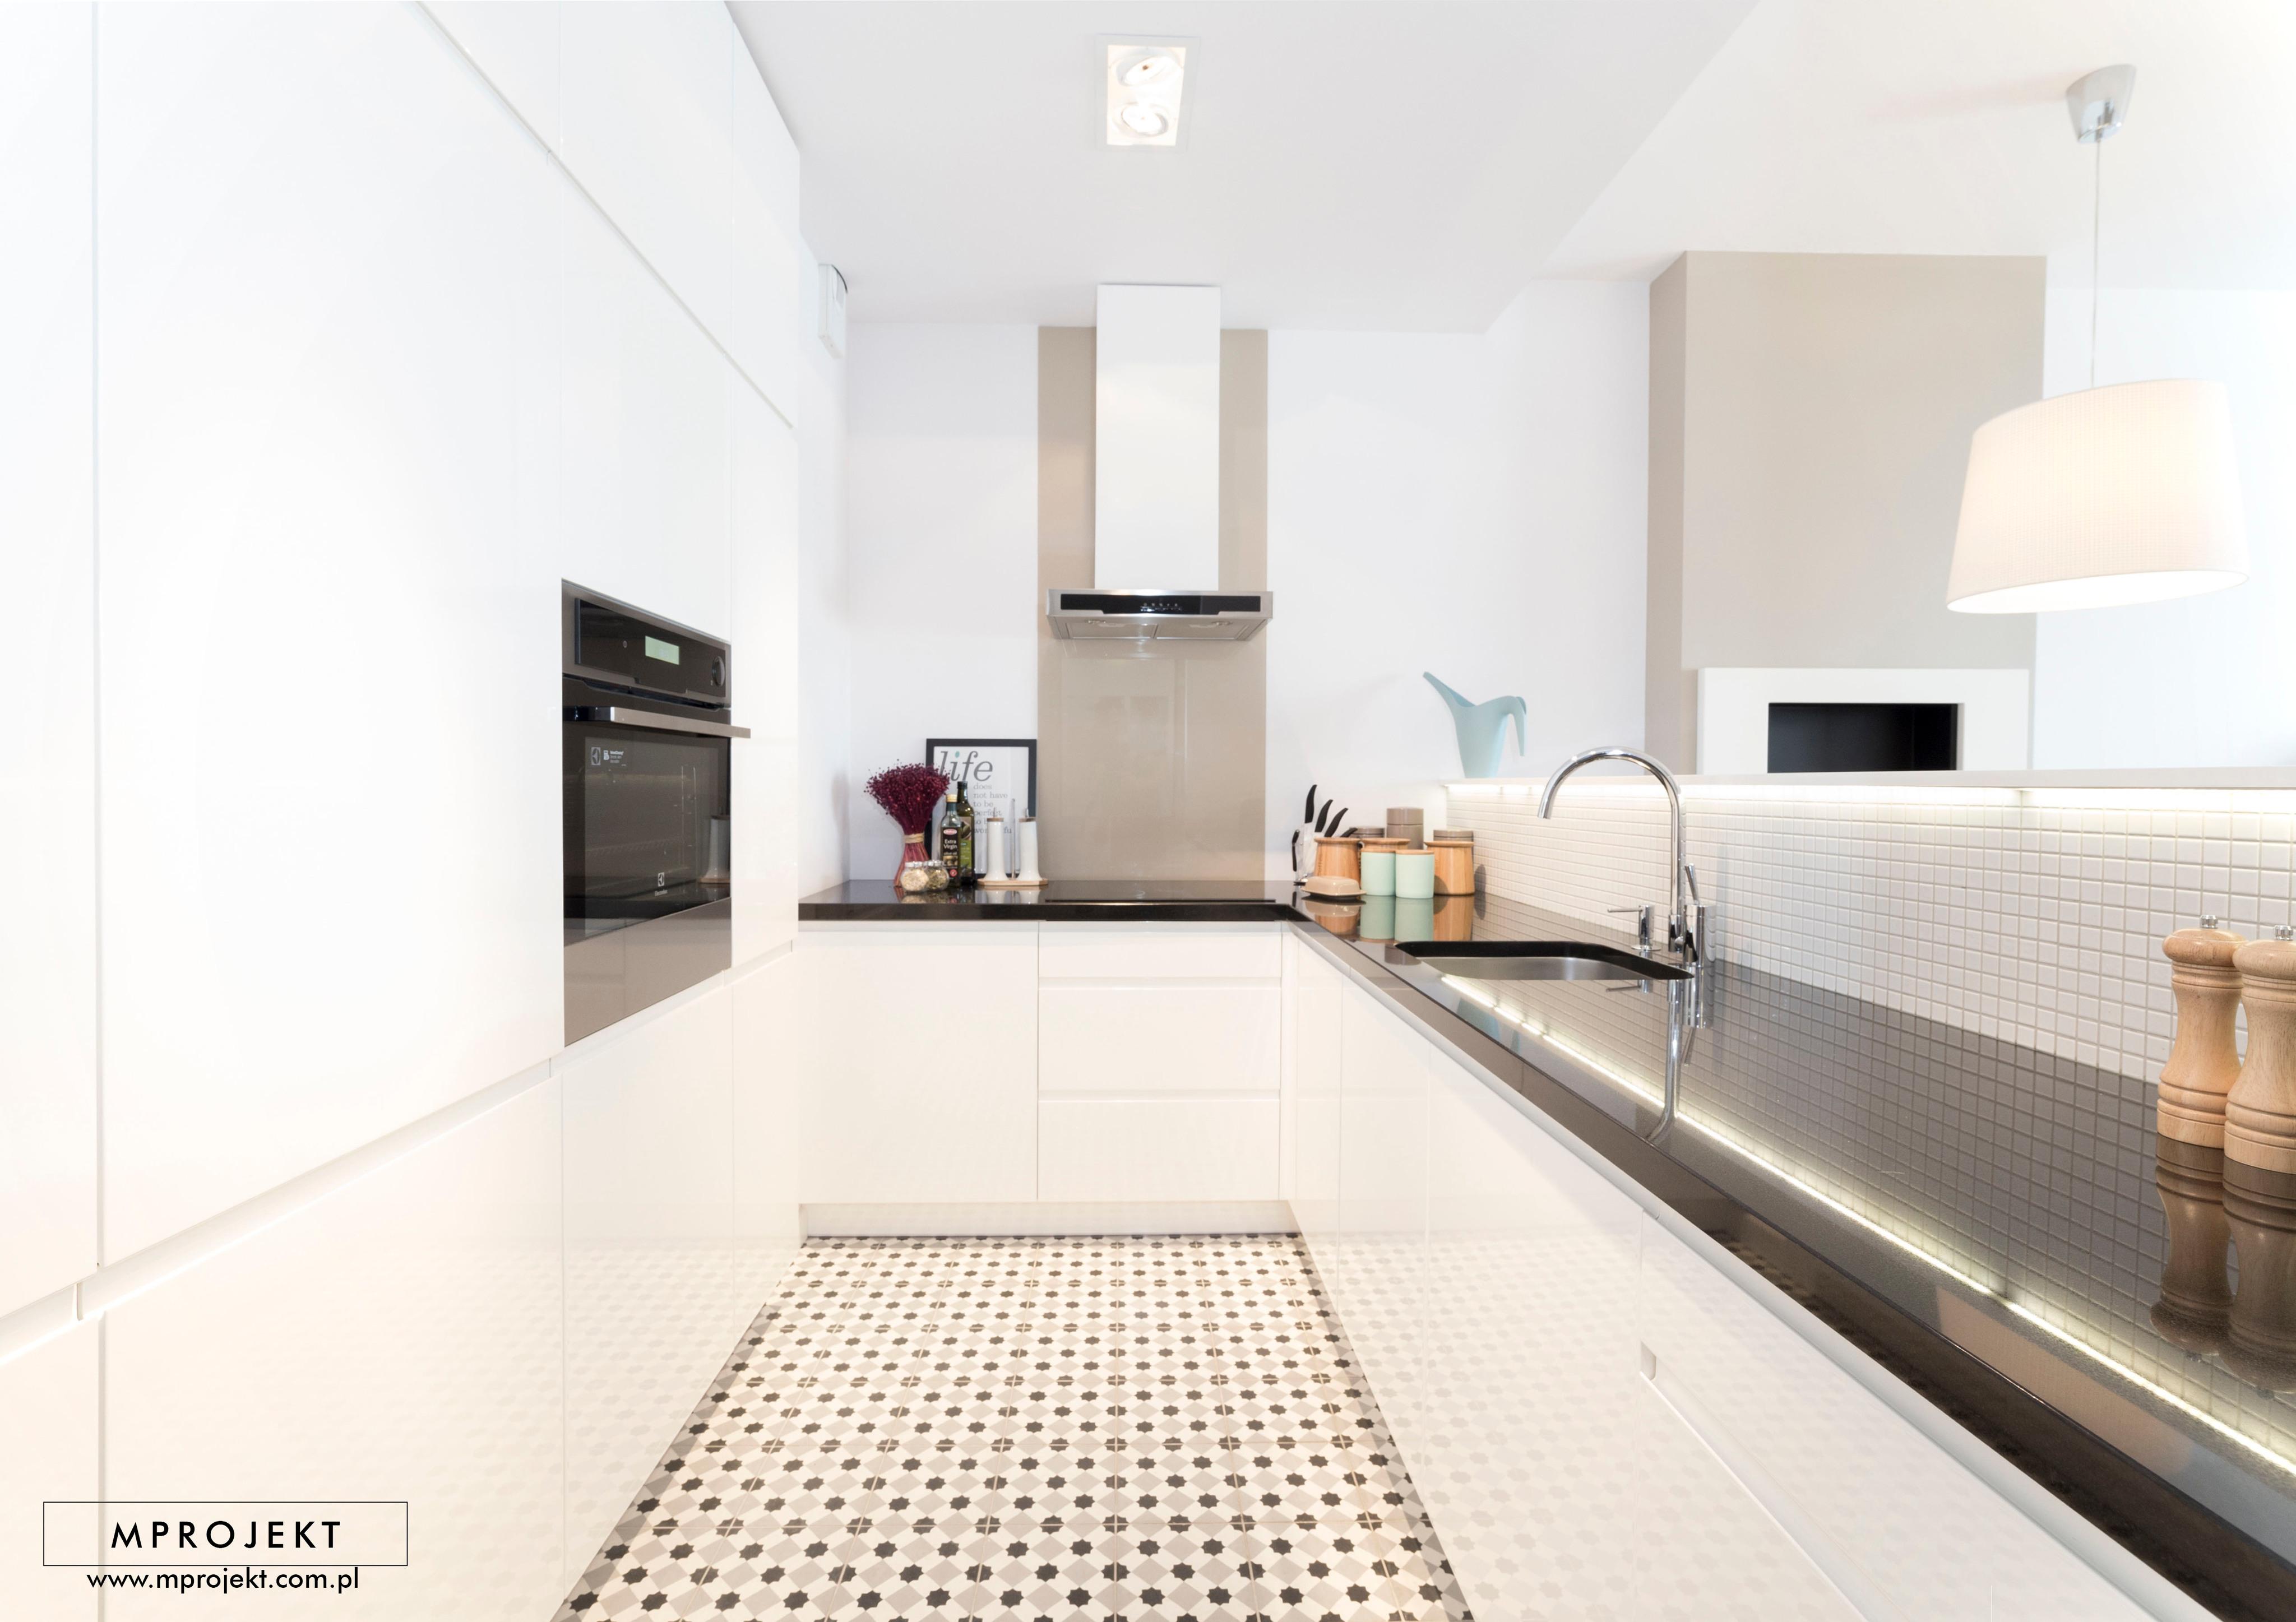 Articima Zementfliesen 301 in einer modernen Küche #zementfliesen #zementküchenfliesen ©MProjekt